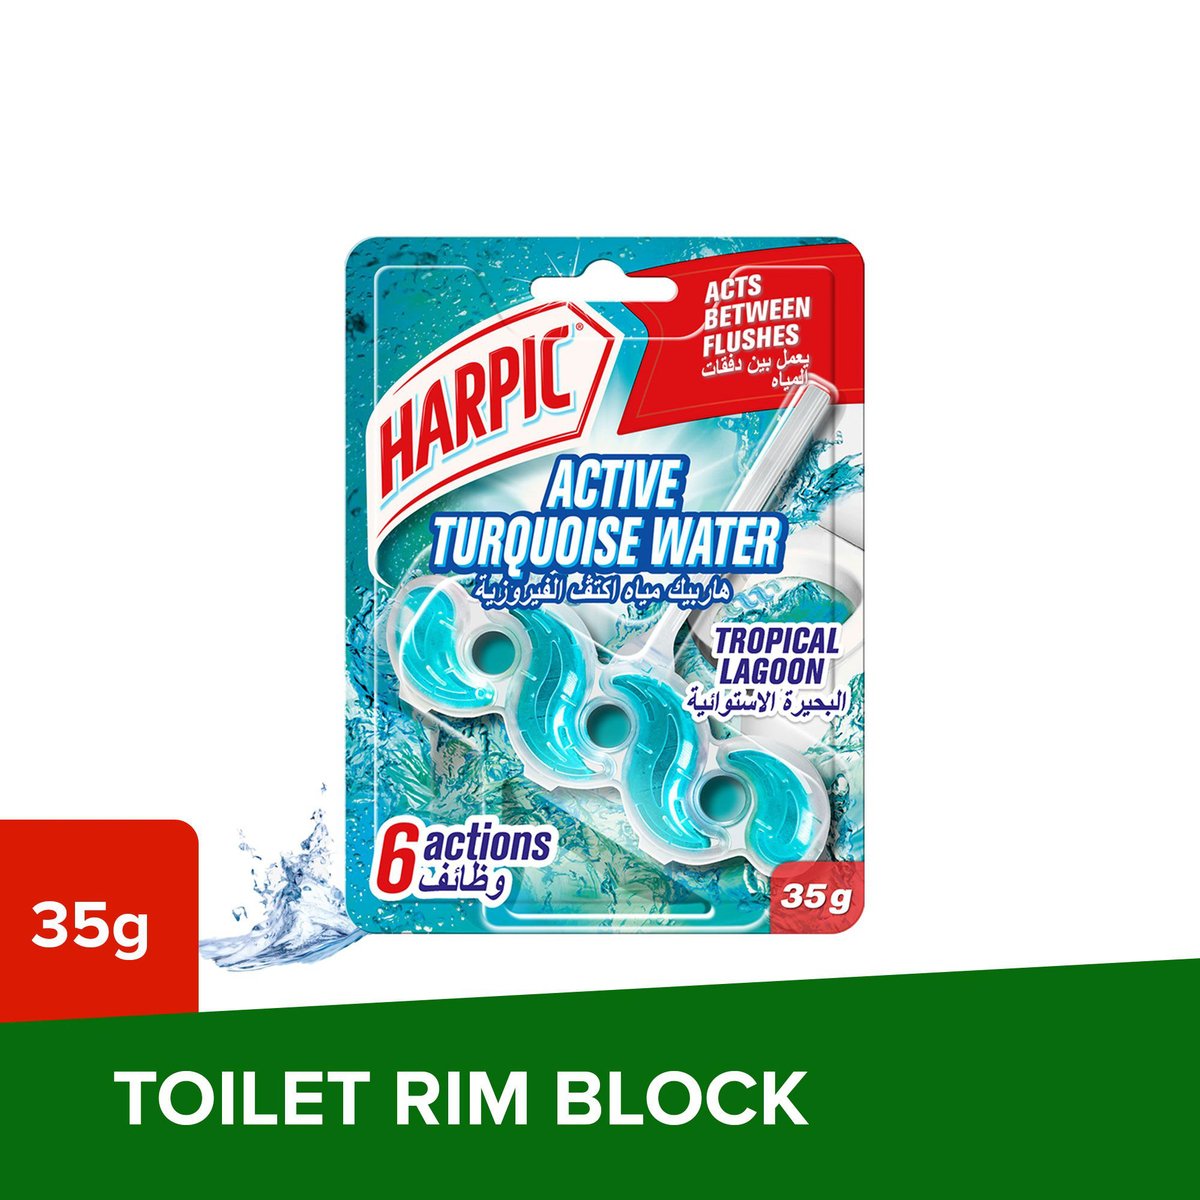 Buy Harpic Active Turquoise Water Tropical Lagoon Toilet Block 35 g Online at Best Price | Toilet Blocks | Lulu UAE in UAE